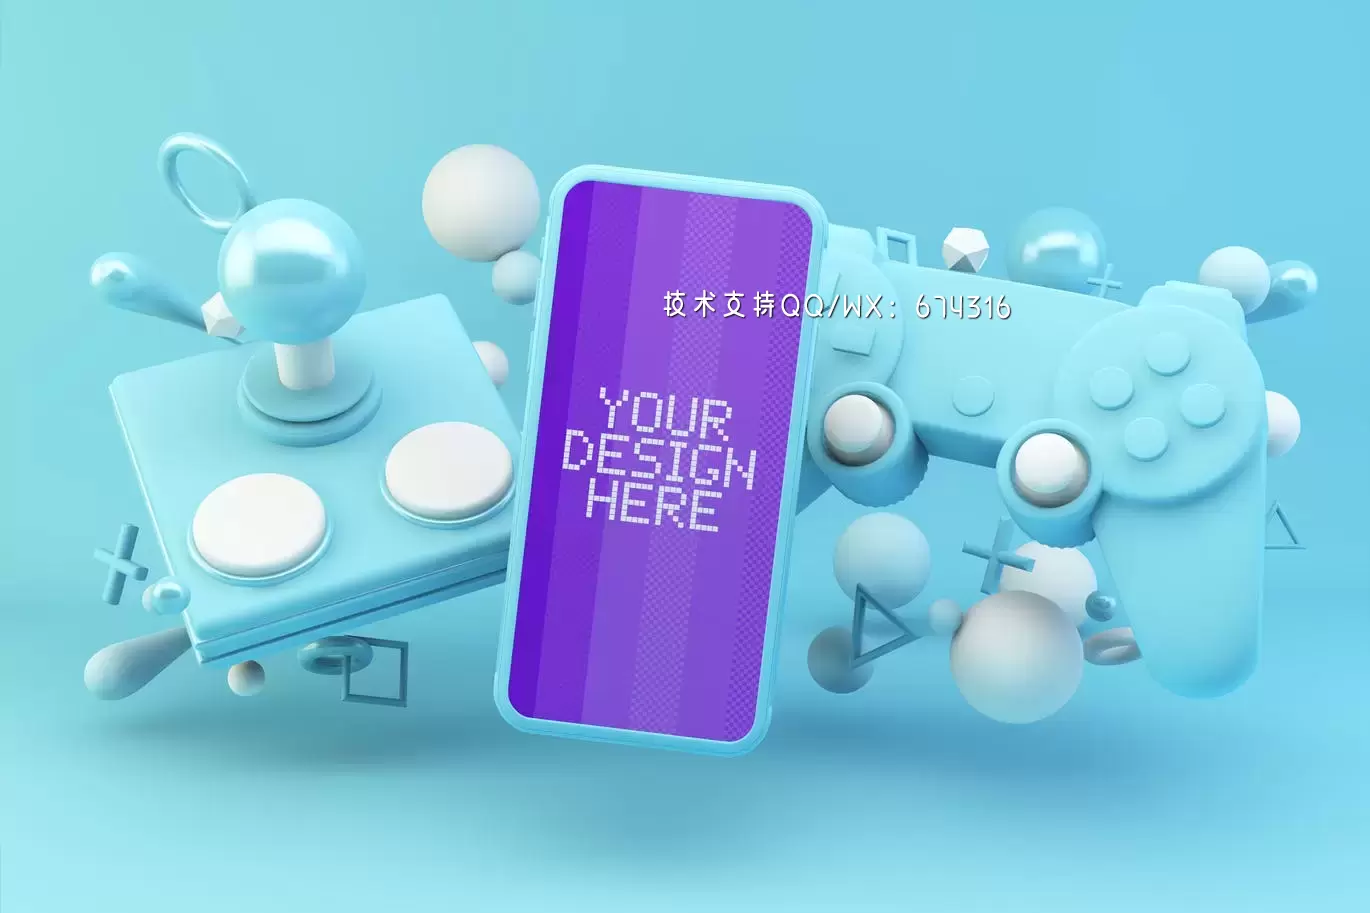 蓝色游戏手柄手机模型 (PSD)免费下载